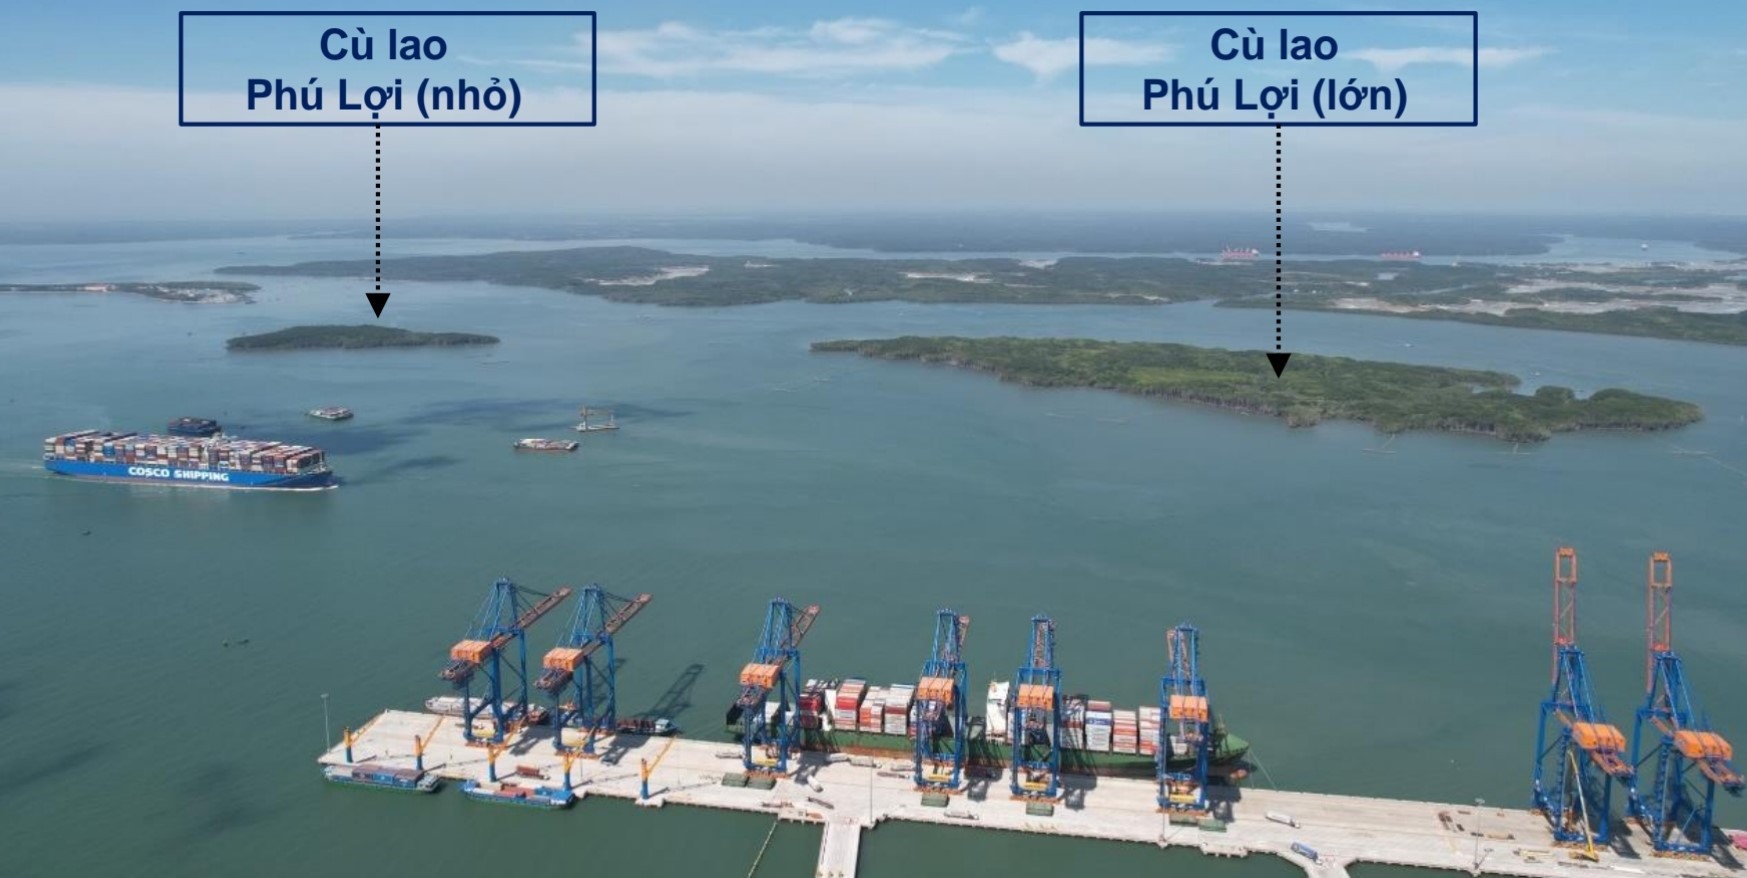 Cùng với dự án Khu đô thị du lịch biển Cần Giờ, TP Hồ Chí Minh đang nghiên cứu xây dựng cảng trung chuyển quốc tế Cần Giờ với tổng vốn gần 129.000 tỉ đồng (hơn 5,4 tỉ USD), đặt tại khu vực Cù lao Phú Lợi (xã Thạnh An, huyện Cần Giờ).